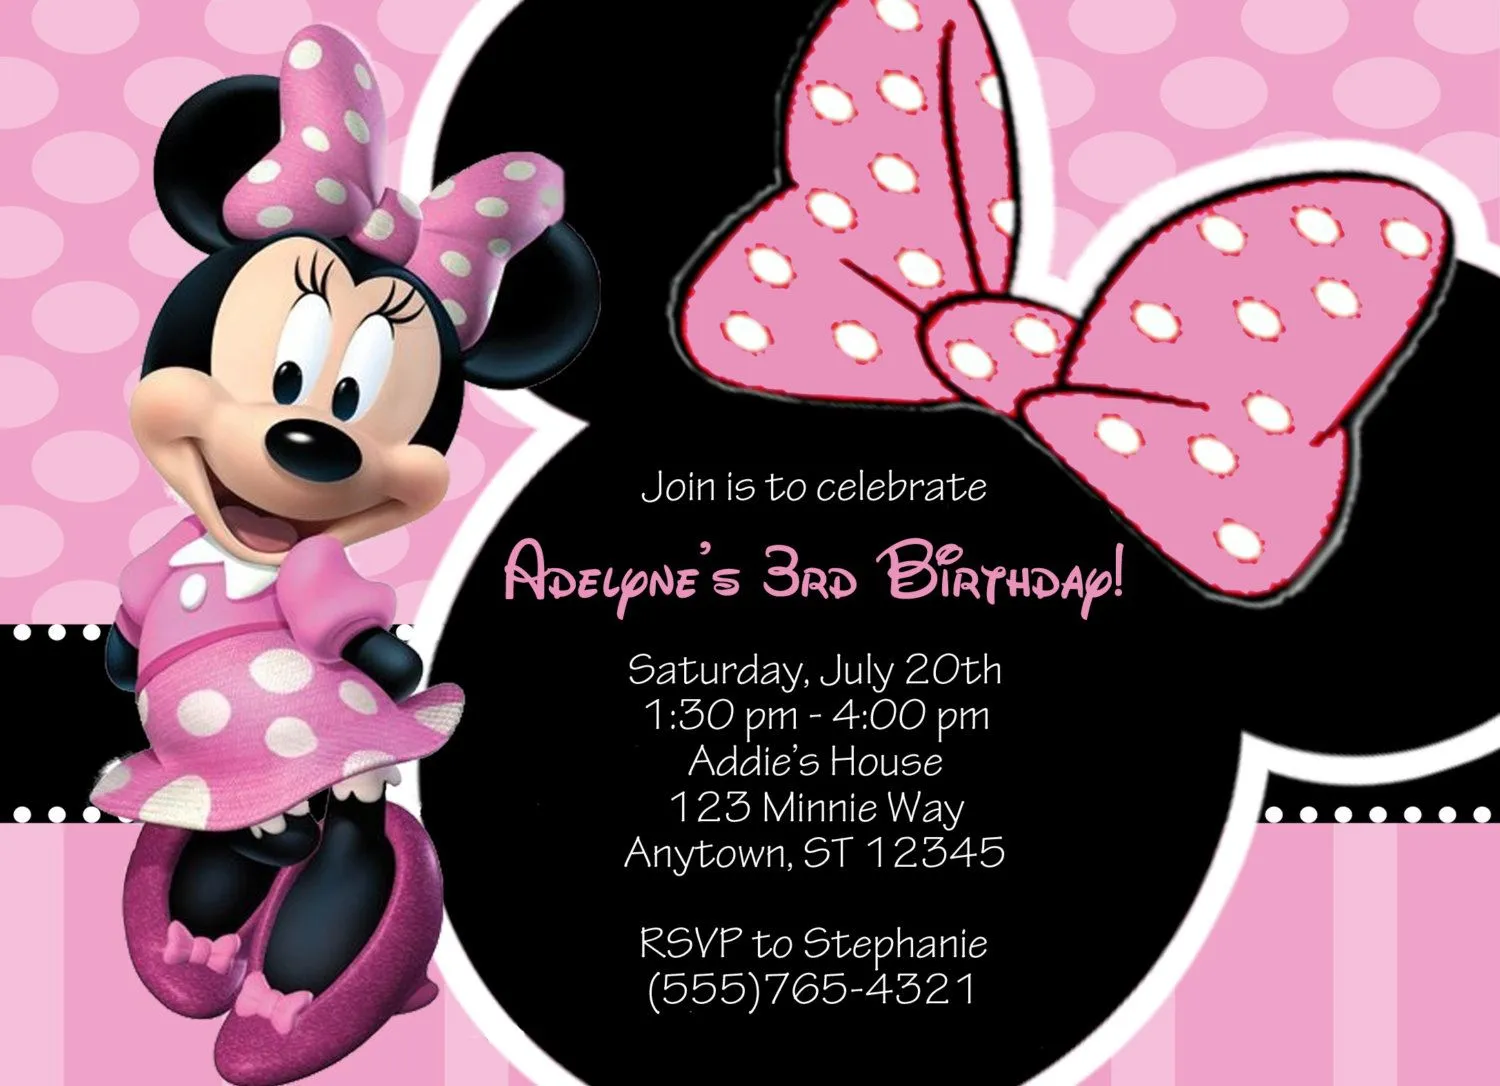 Invitaciones De Cumpleaños De Minnie Mouse Para Poner De Fondo 2 ...